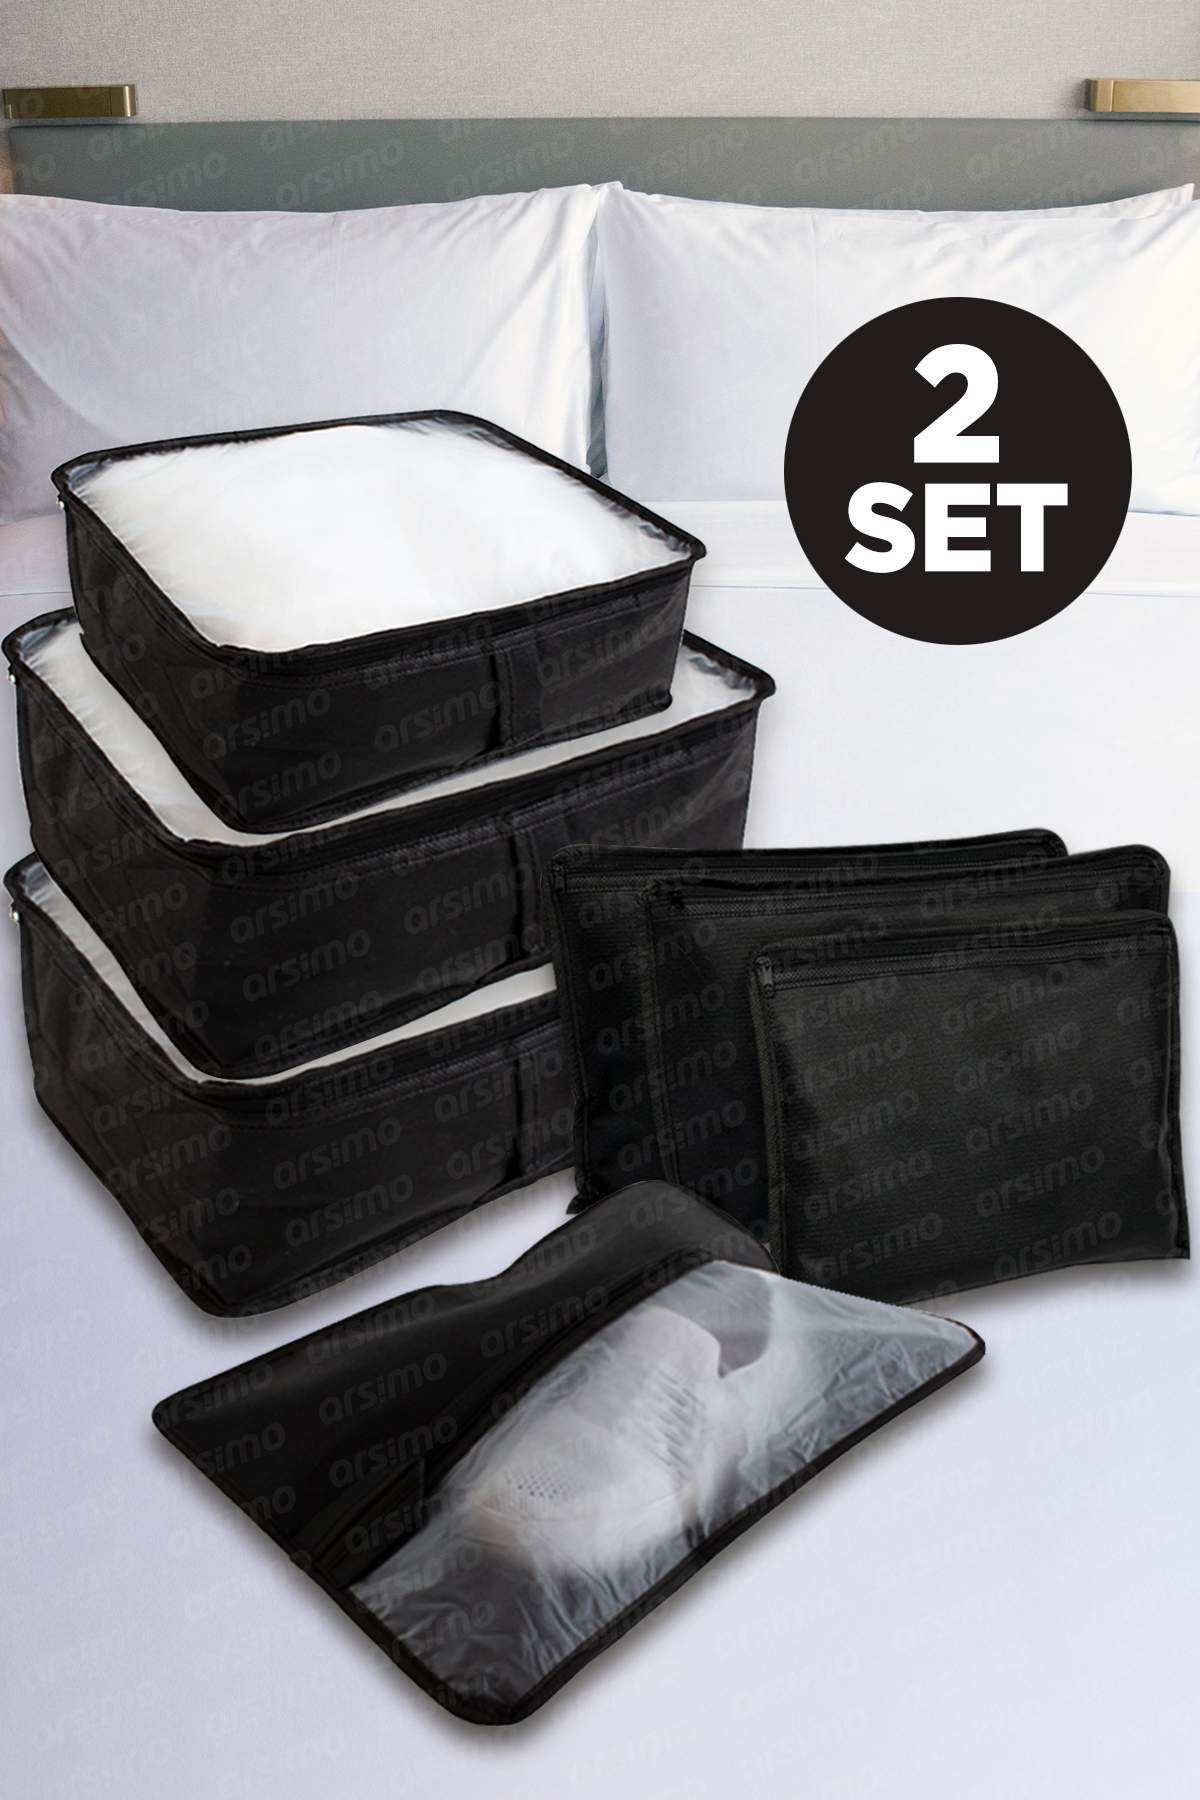 Arsimo Lüks 7 Parça Bavul Dolap Eşya Düzenleyici Pencereli Organizer Set Siyah ( 2 Adet )